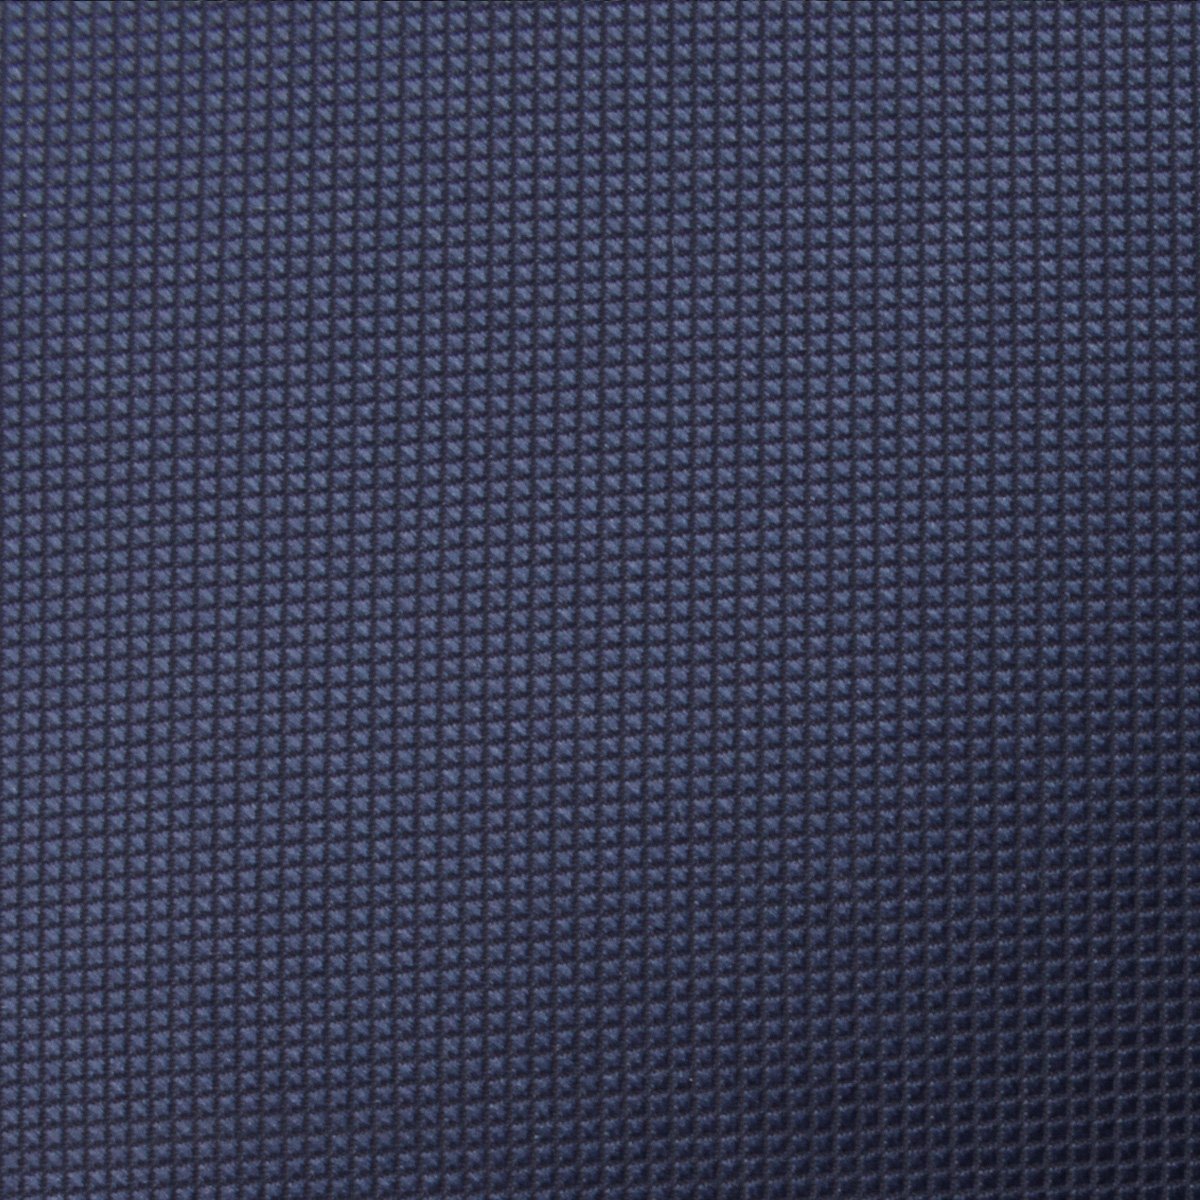 Trivieres Navy Blue Diamond Skinny Tie Fabric